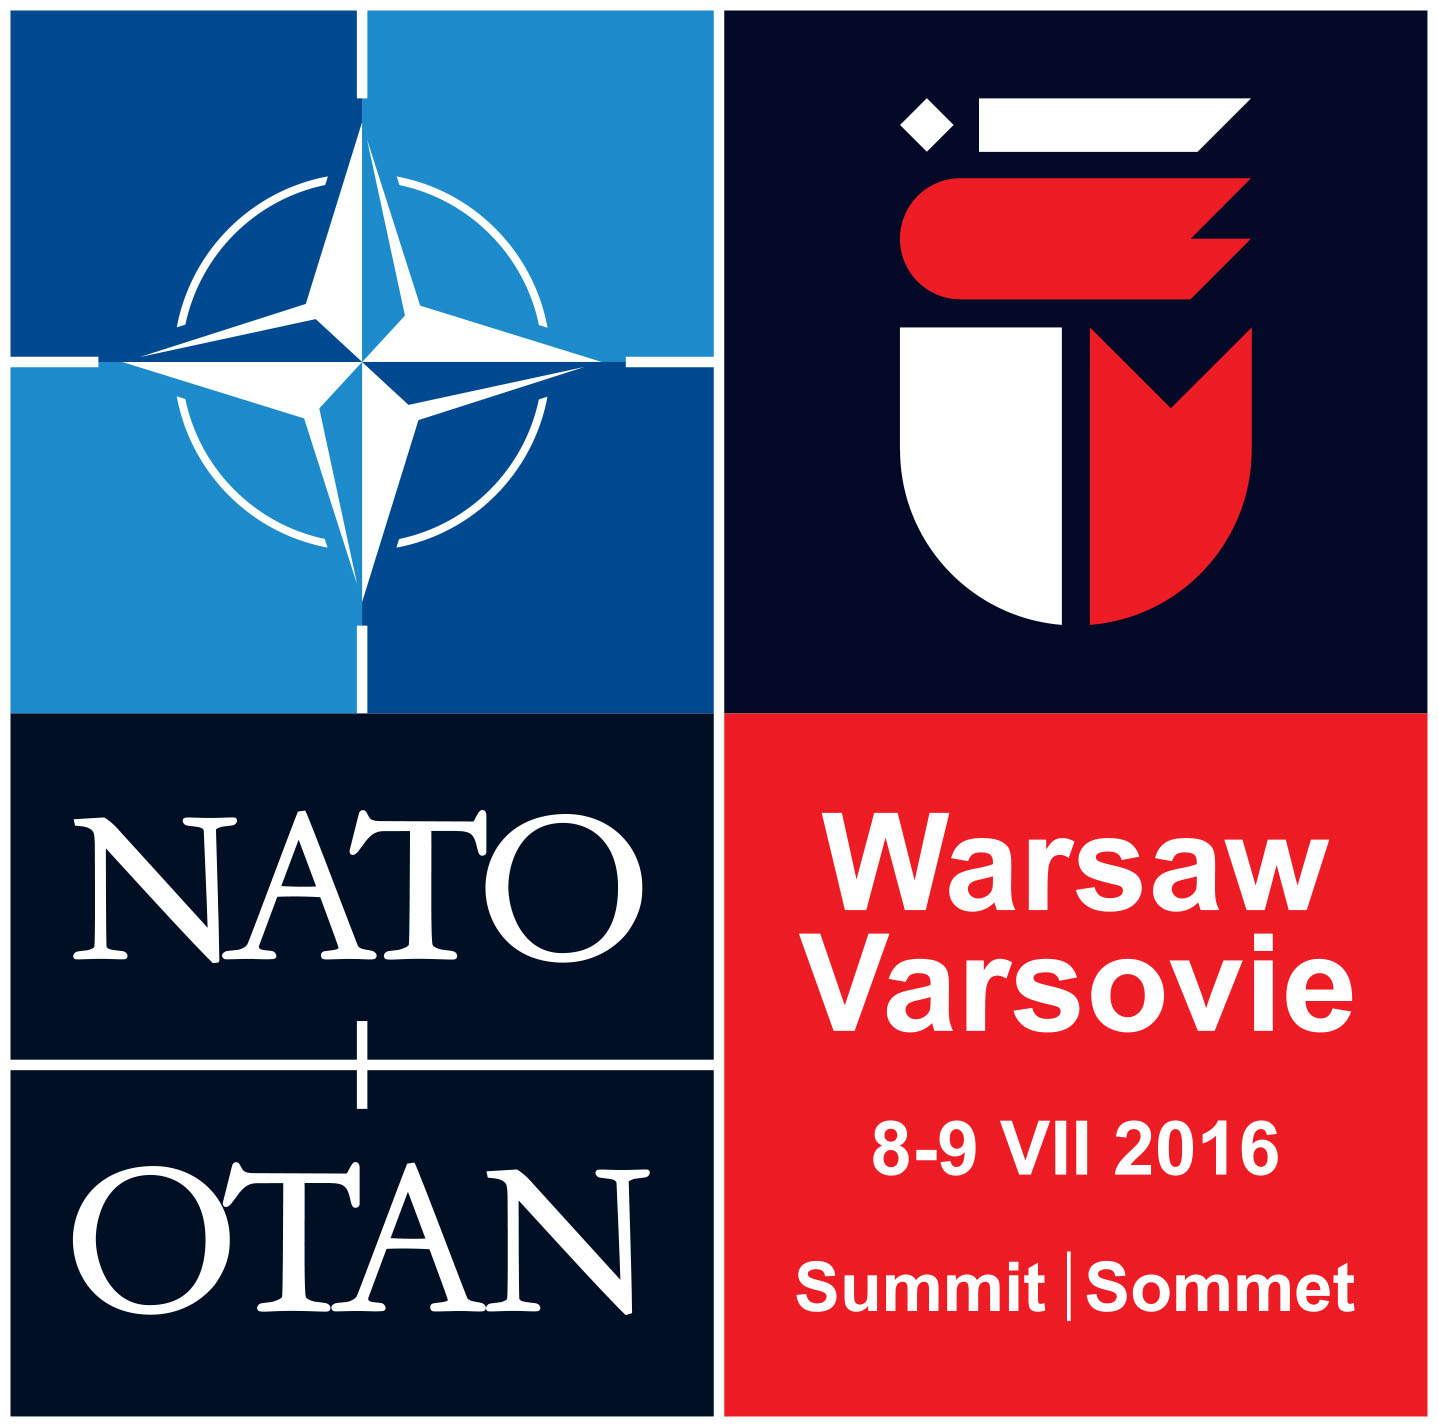 20151201_151201-warsaw-summit-logo